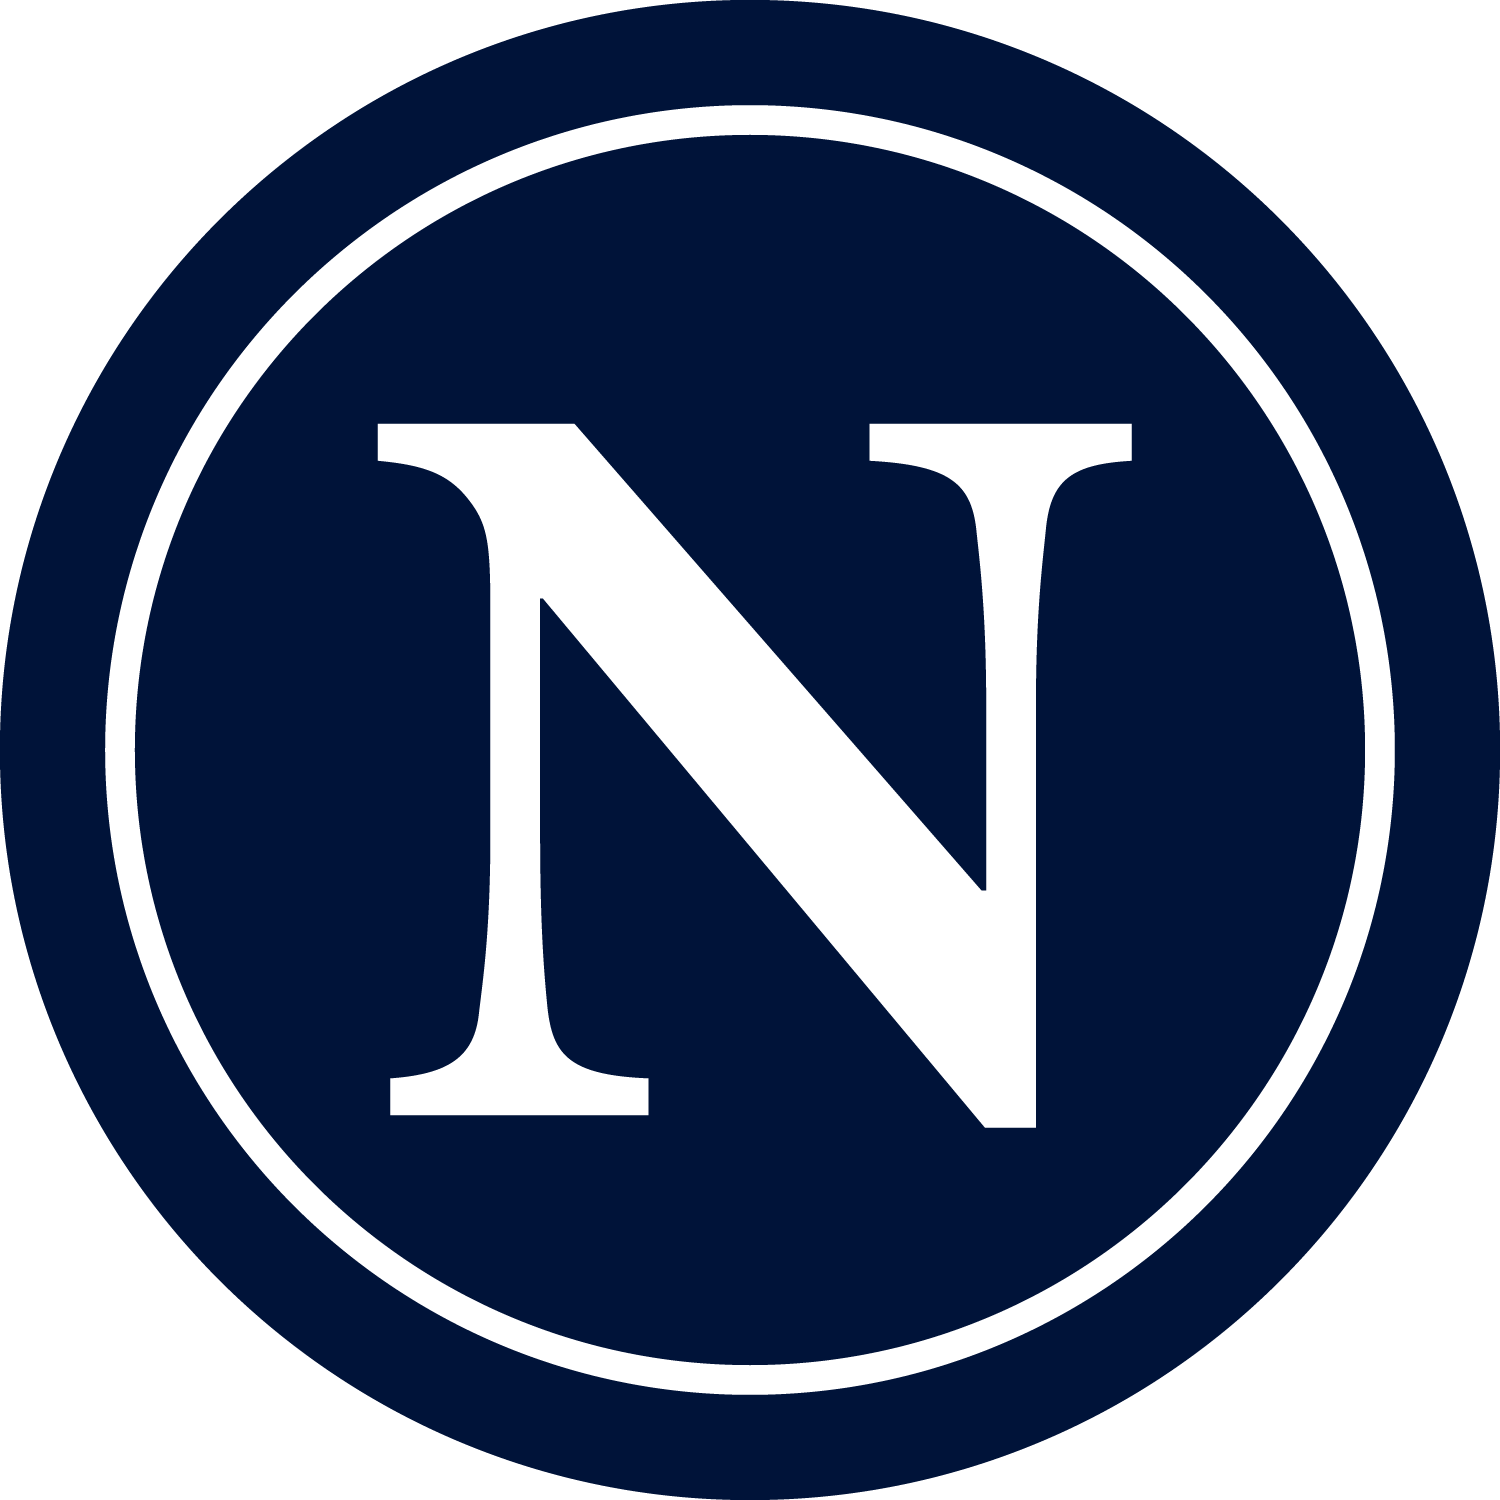 Blue N Logo - N logo | About of logos